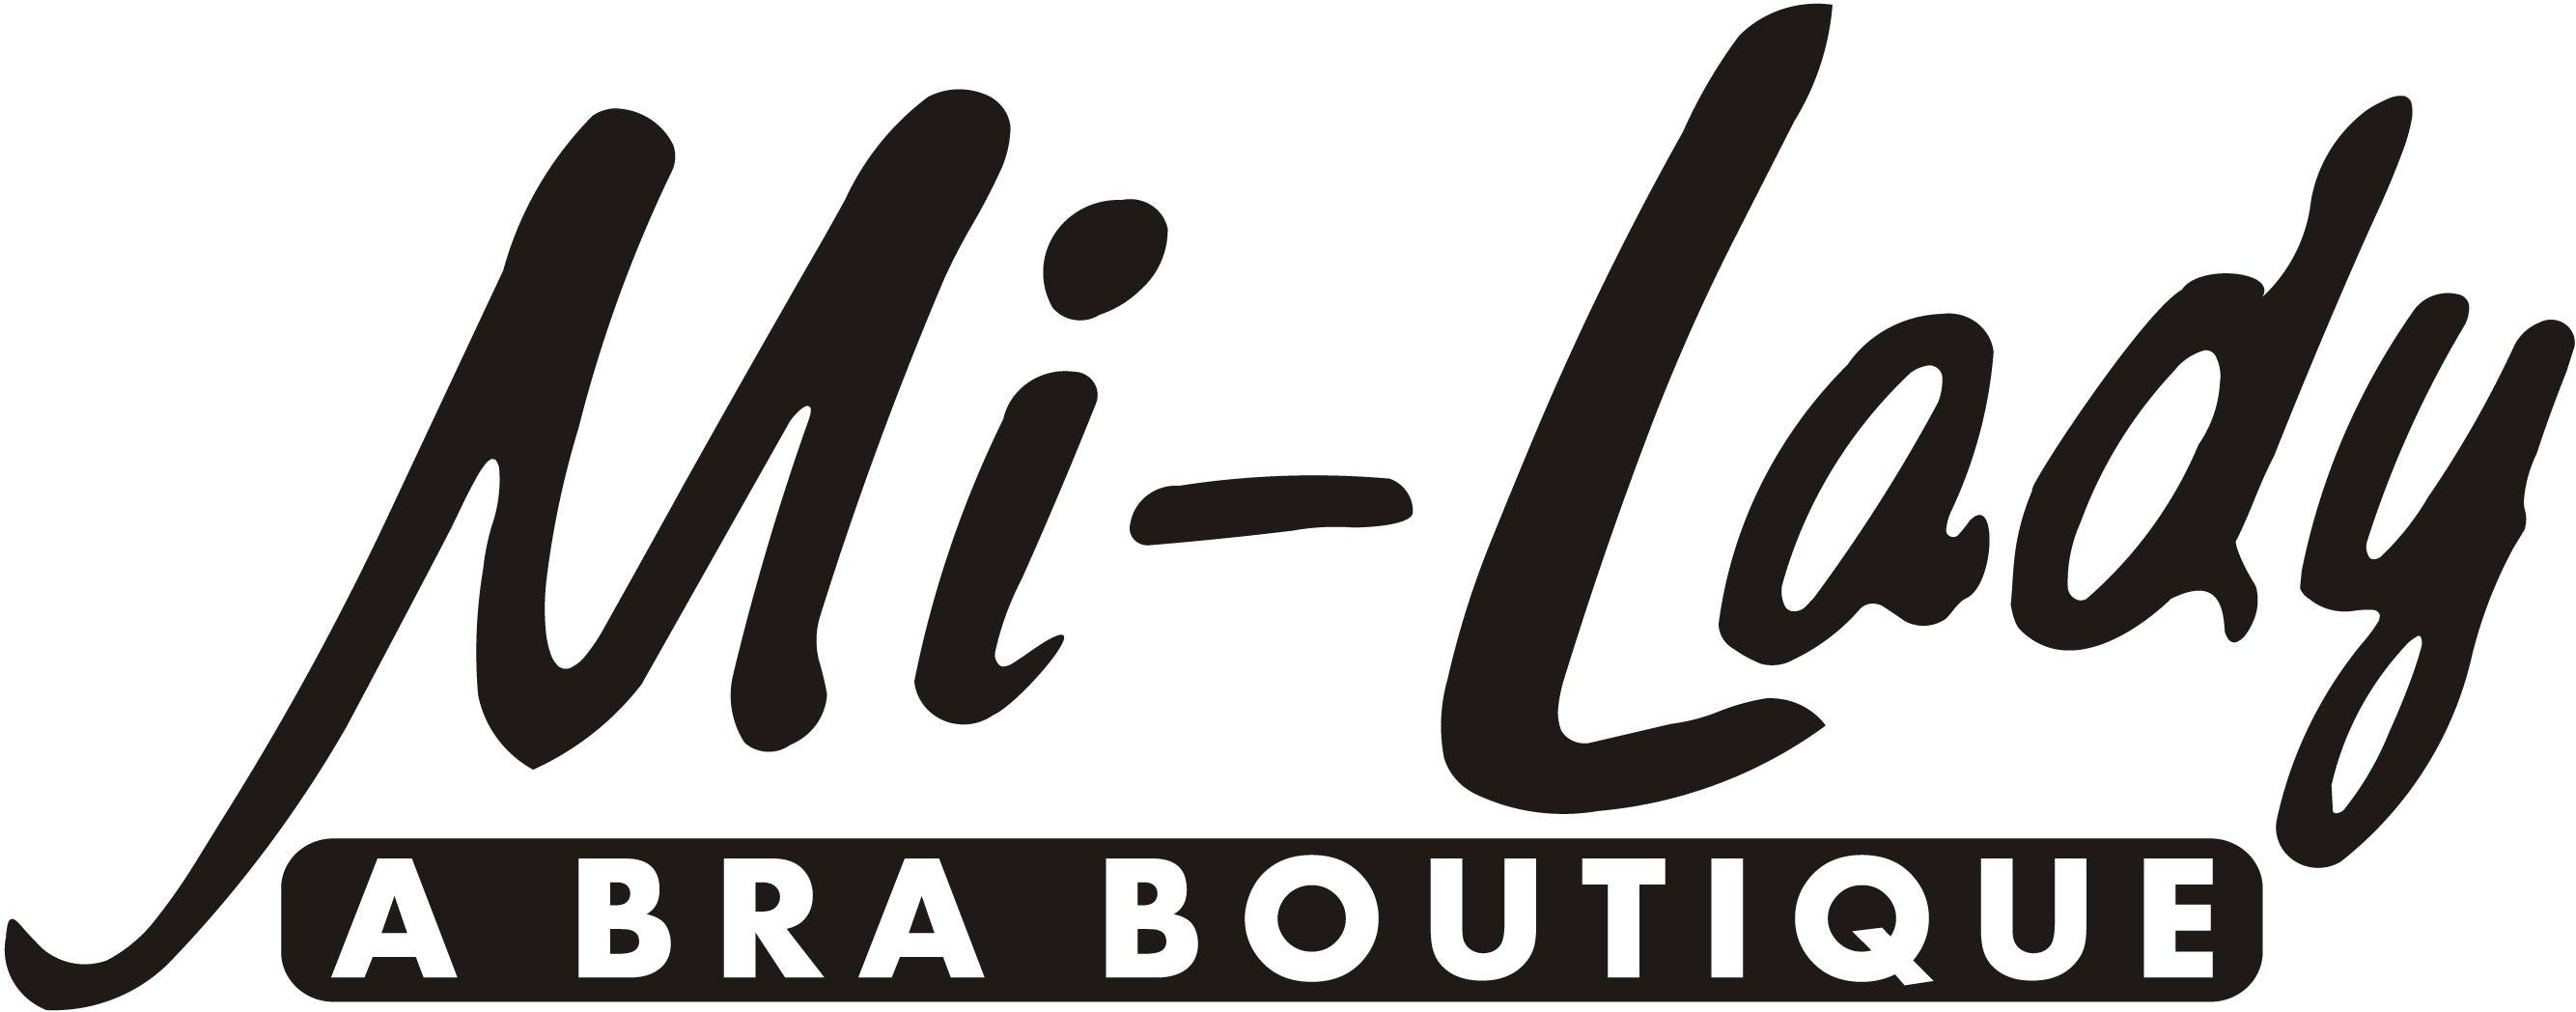 Anita 5726 Wire-free, non-padded bra – Mi-Lady Bra Boutique